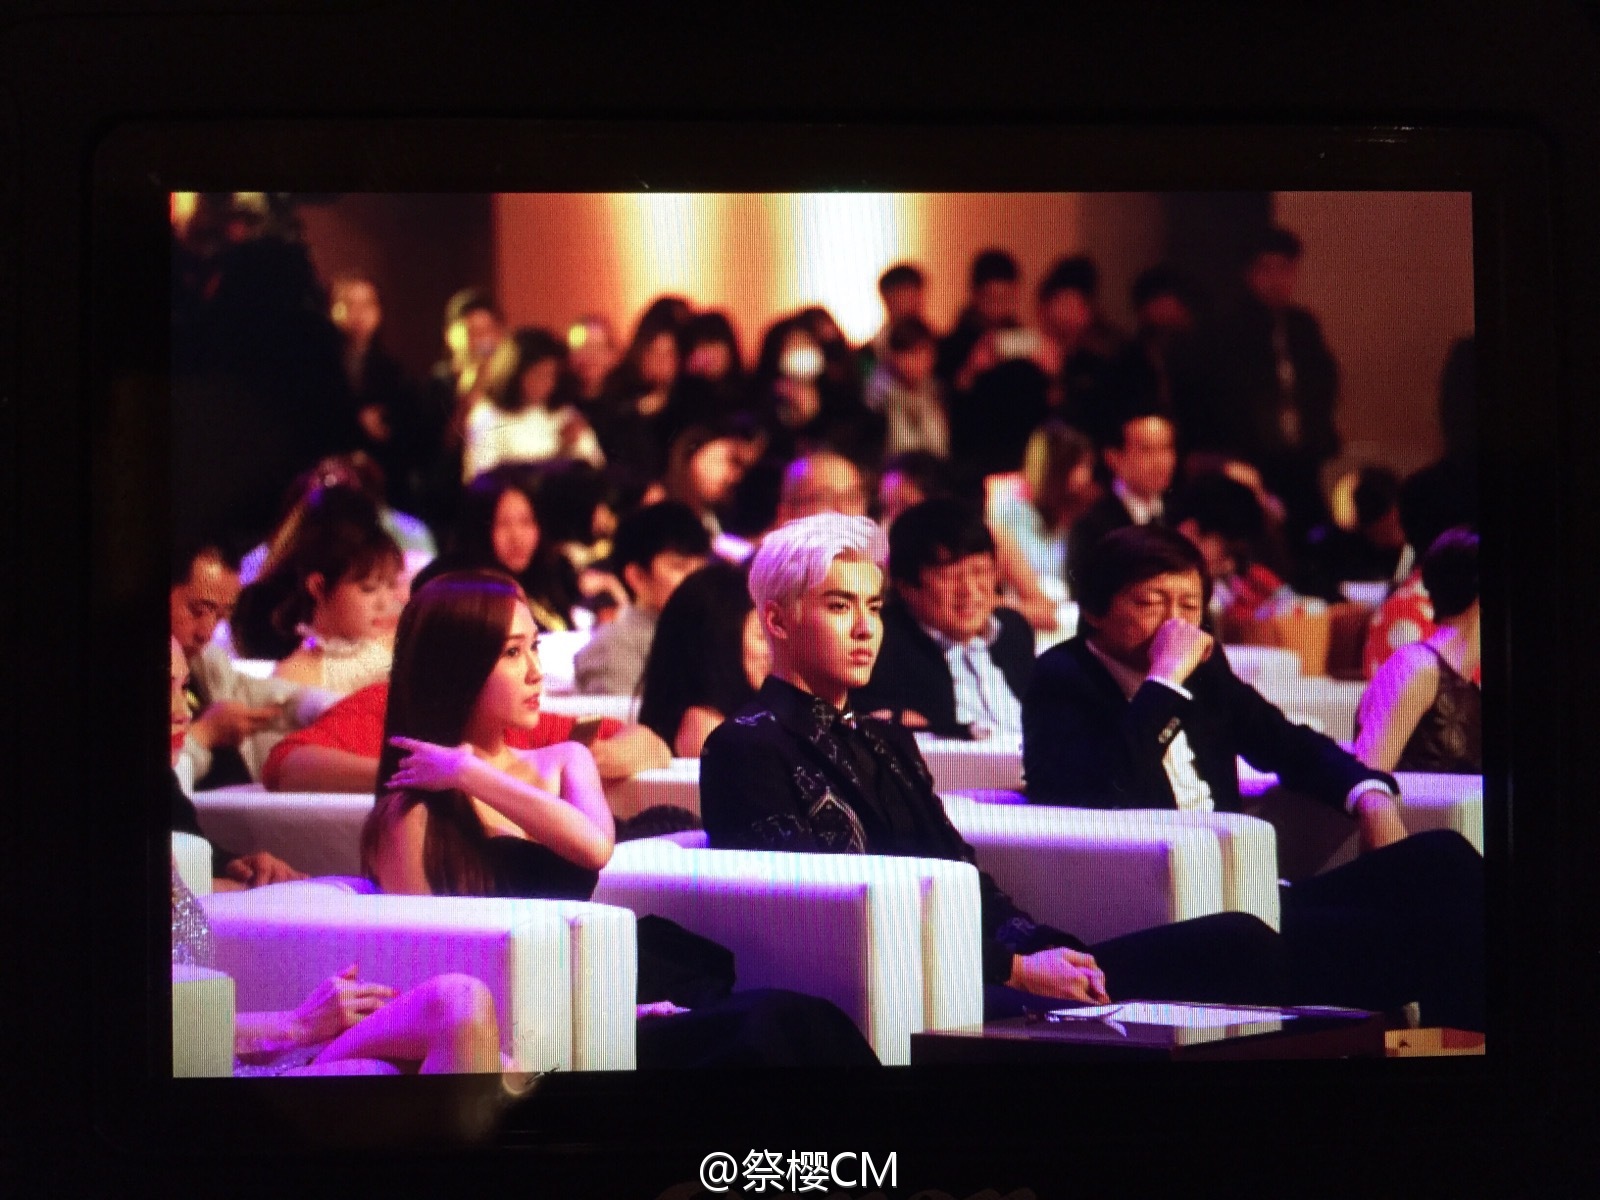 [PIC][23-12-2014]Jessica khởi hành đi Bắc Kinh để tham dự "Sohu Fashion Awards" vào sáng nay Adaf0487jw1enjz2vny0zj218g0xcdpv